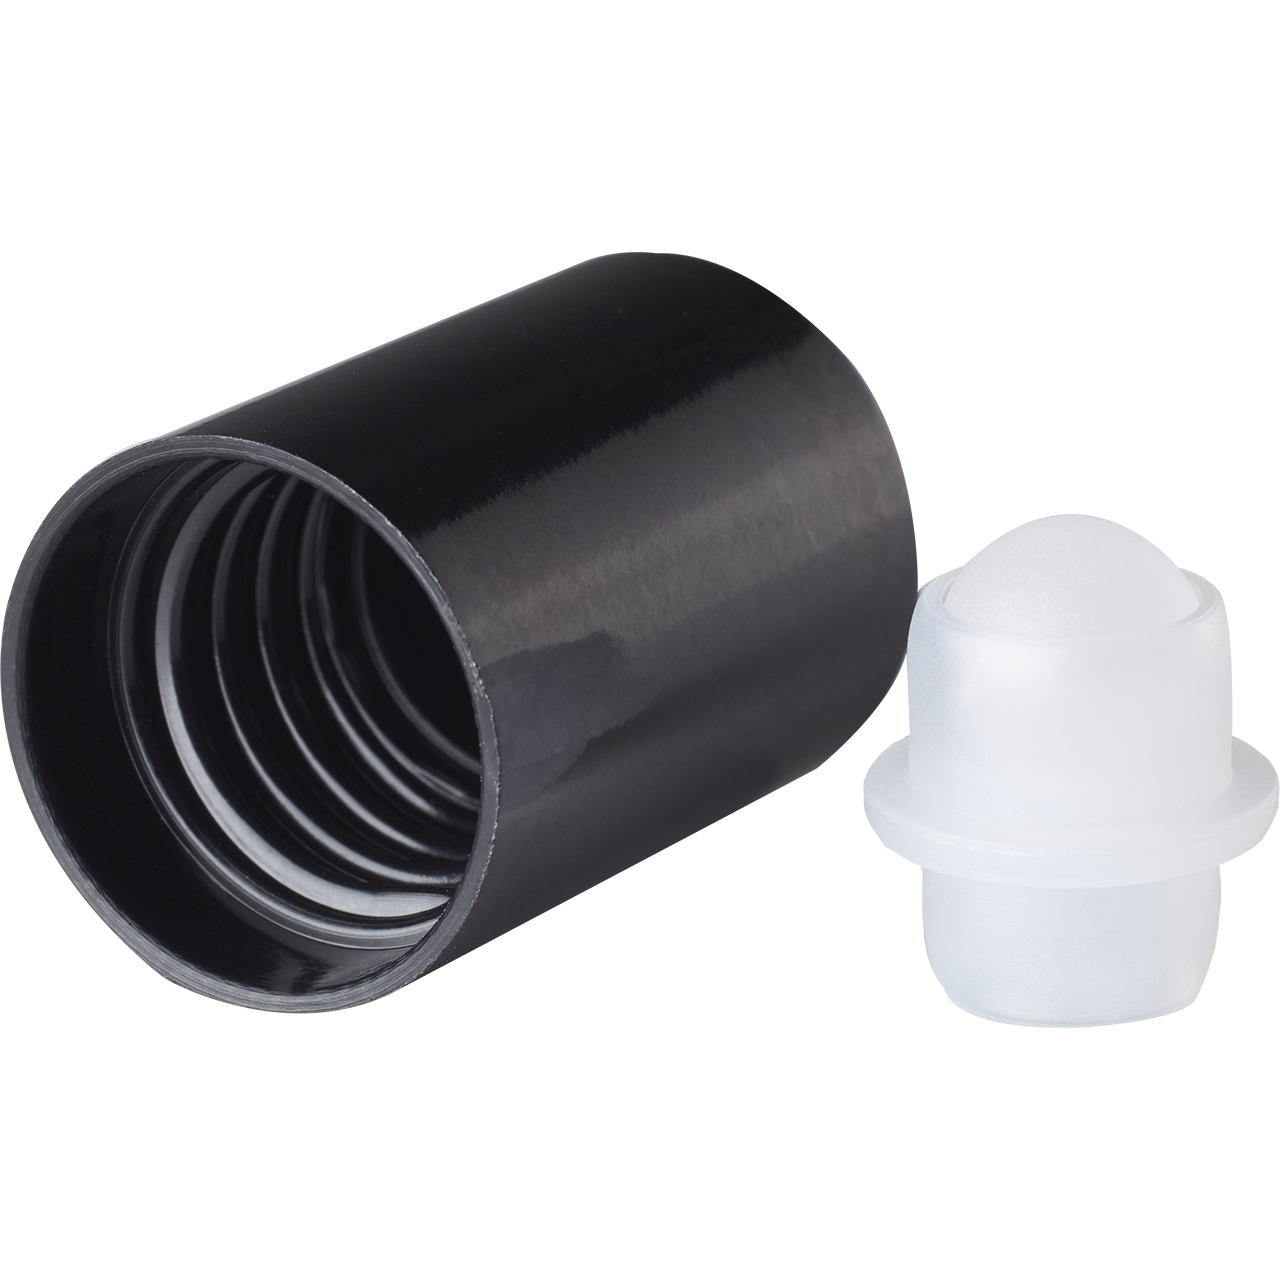 Roll-on cap DIN18, PP, black, natural fitment with white matt plastic ball, black cap (for Orion 5-100 ml)